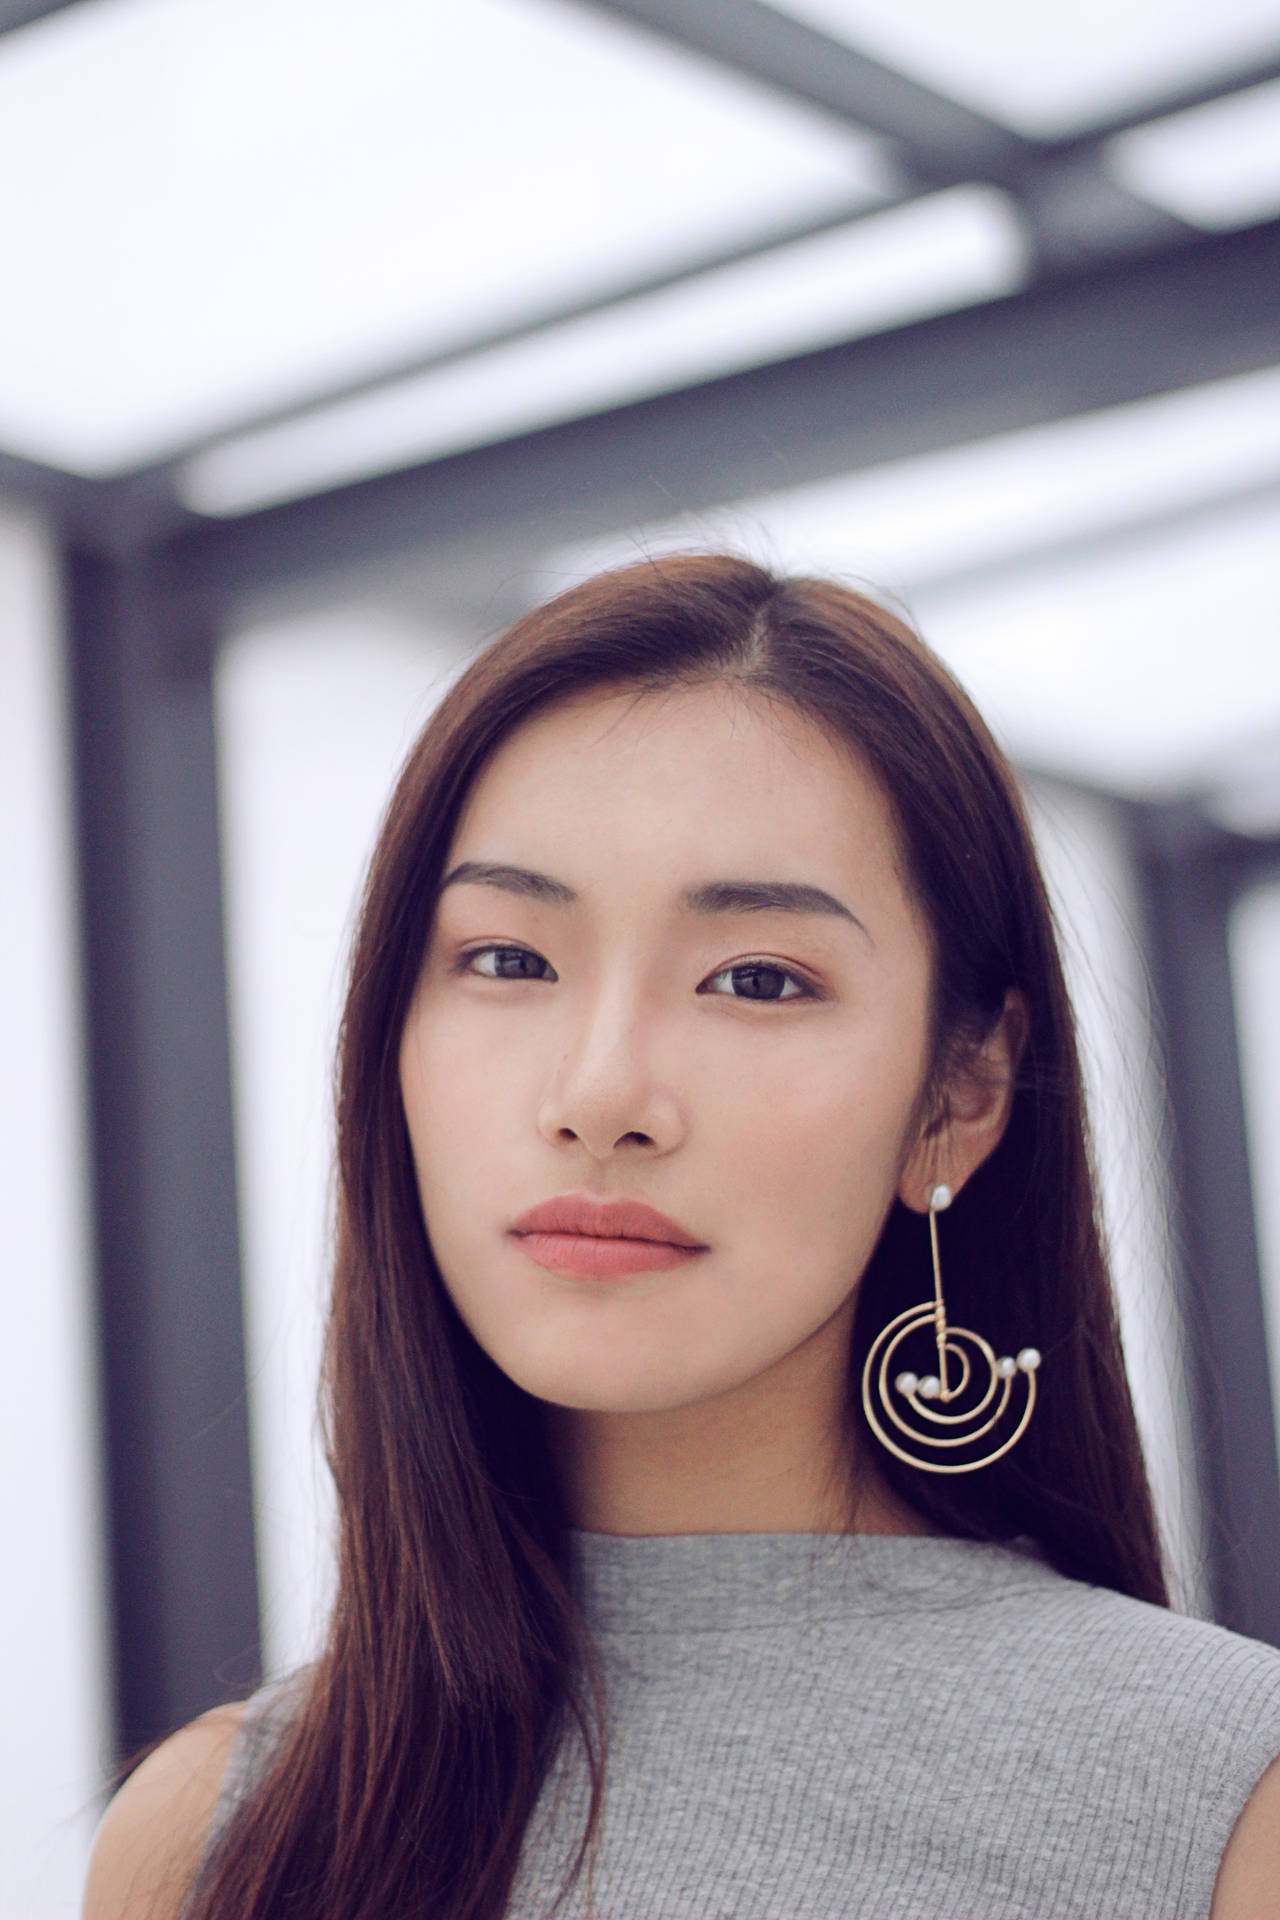 Asian Woman Wearing A Dangling Earring